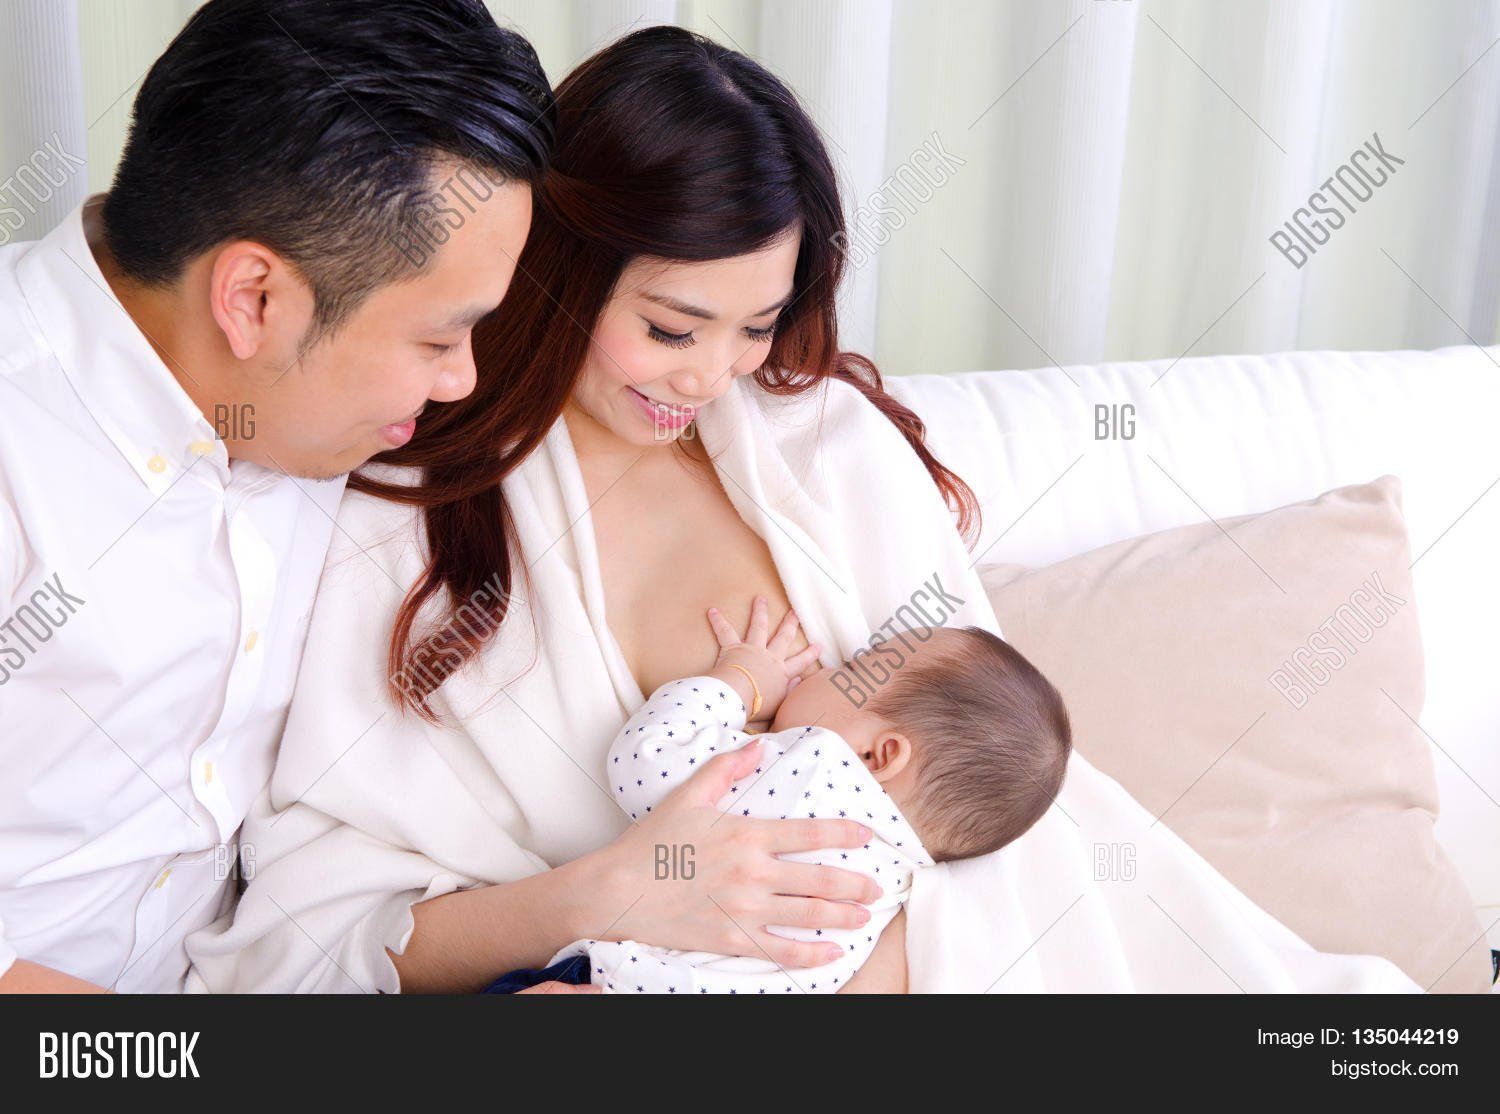 Asian woman breast feeding man